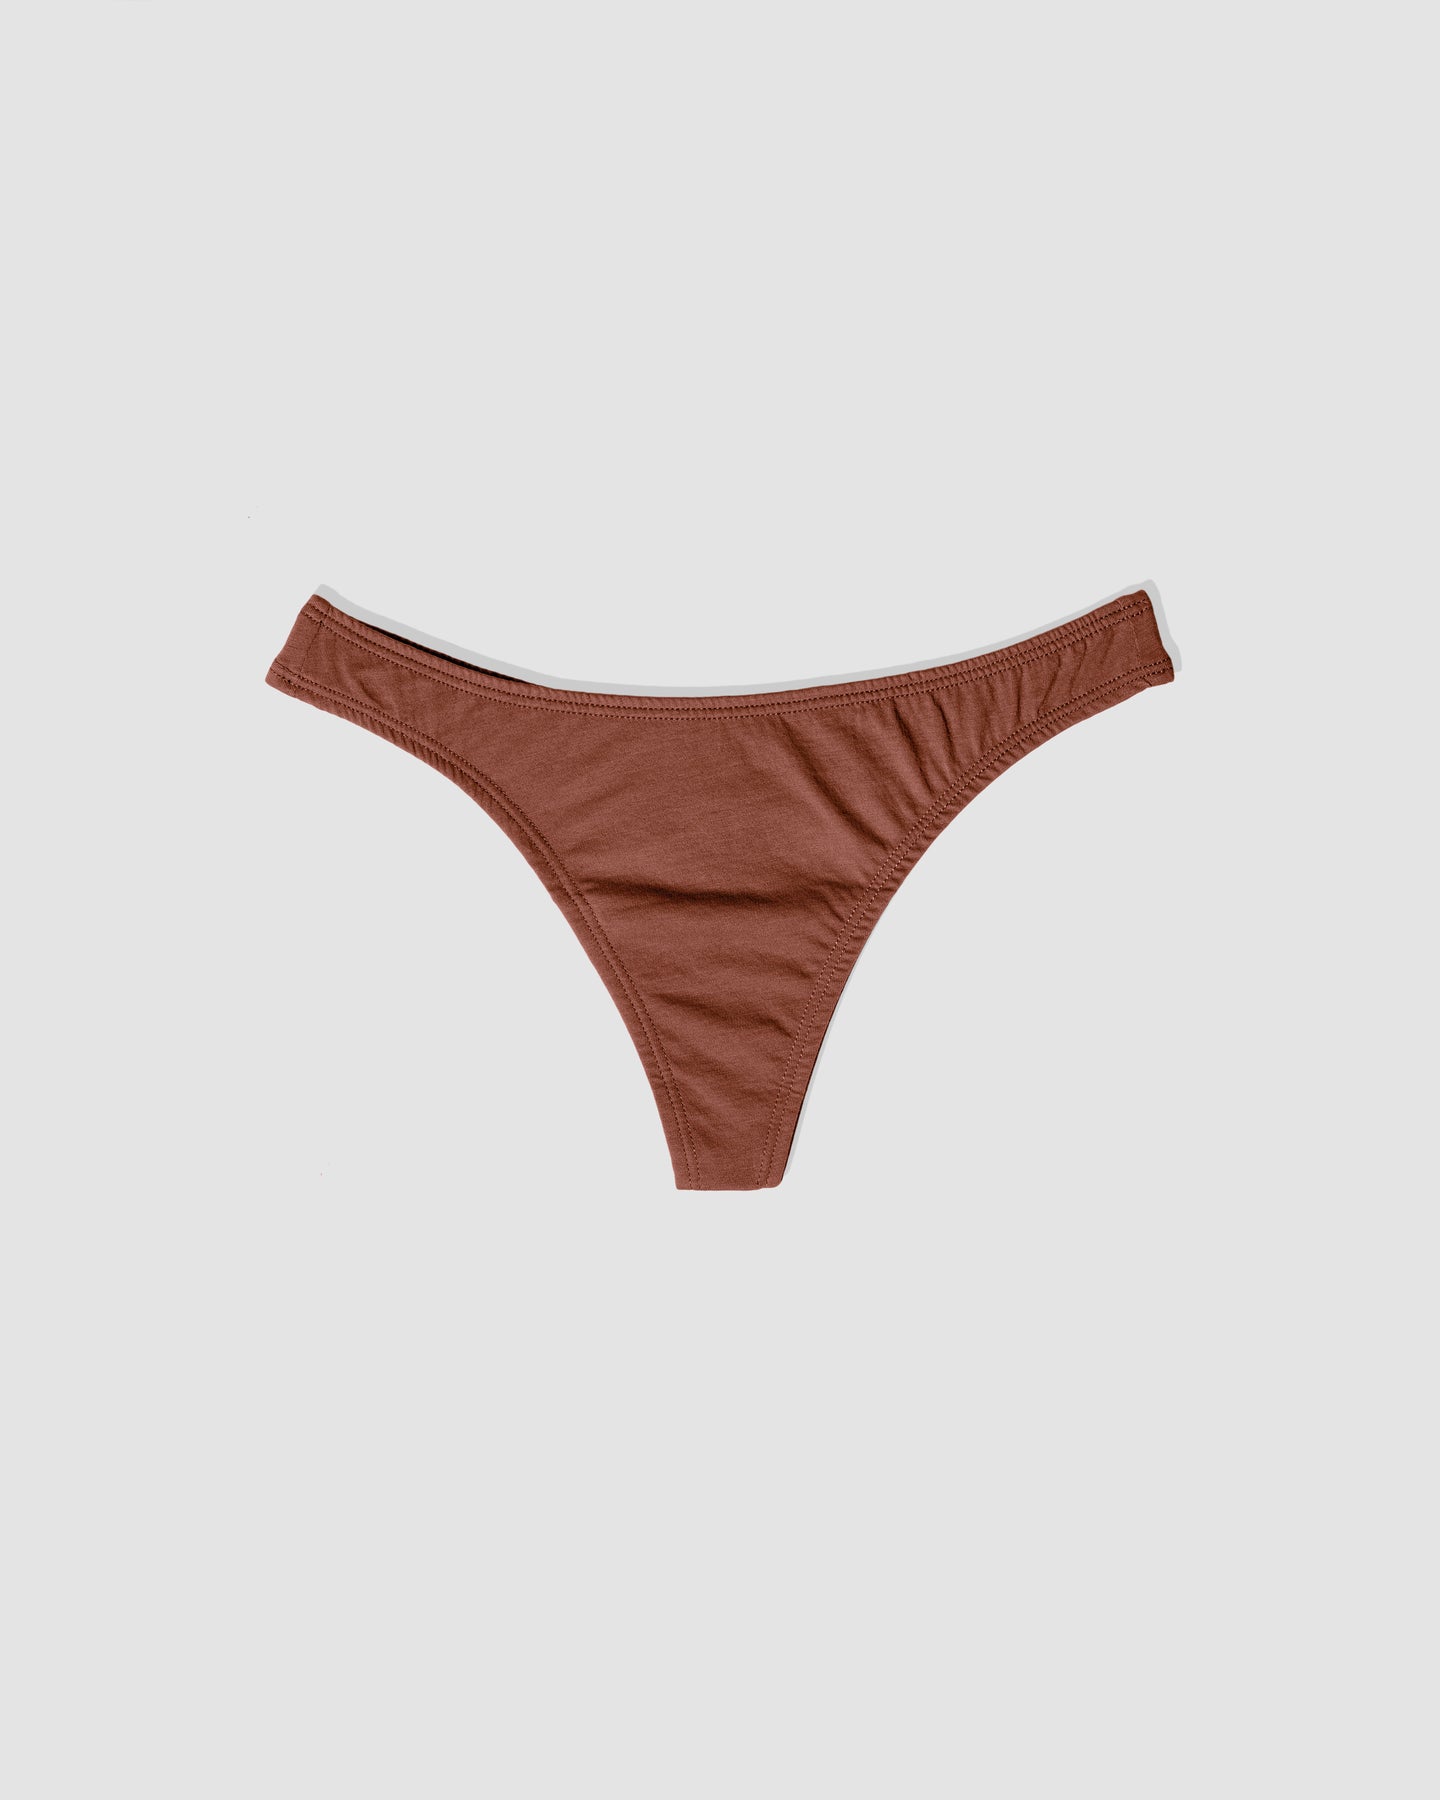 MOAB Organics Women's Cotton Thong Panty - M53121 (Wheat, XS